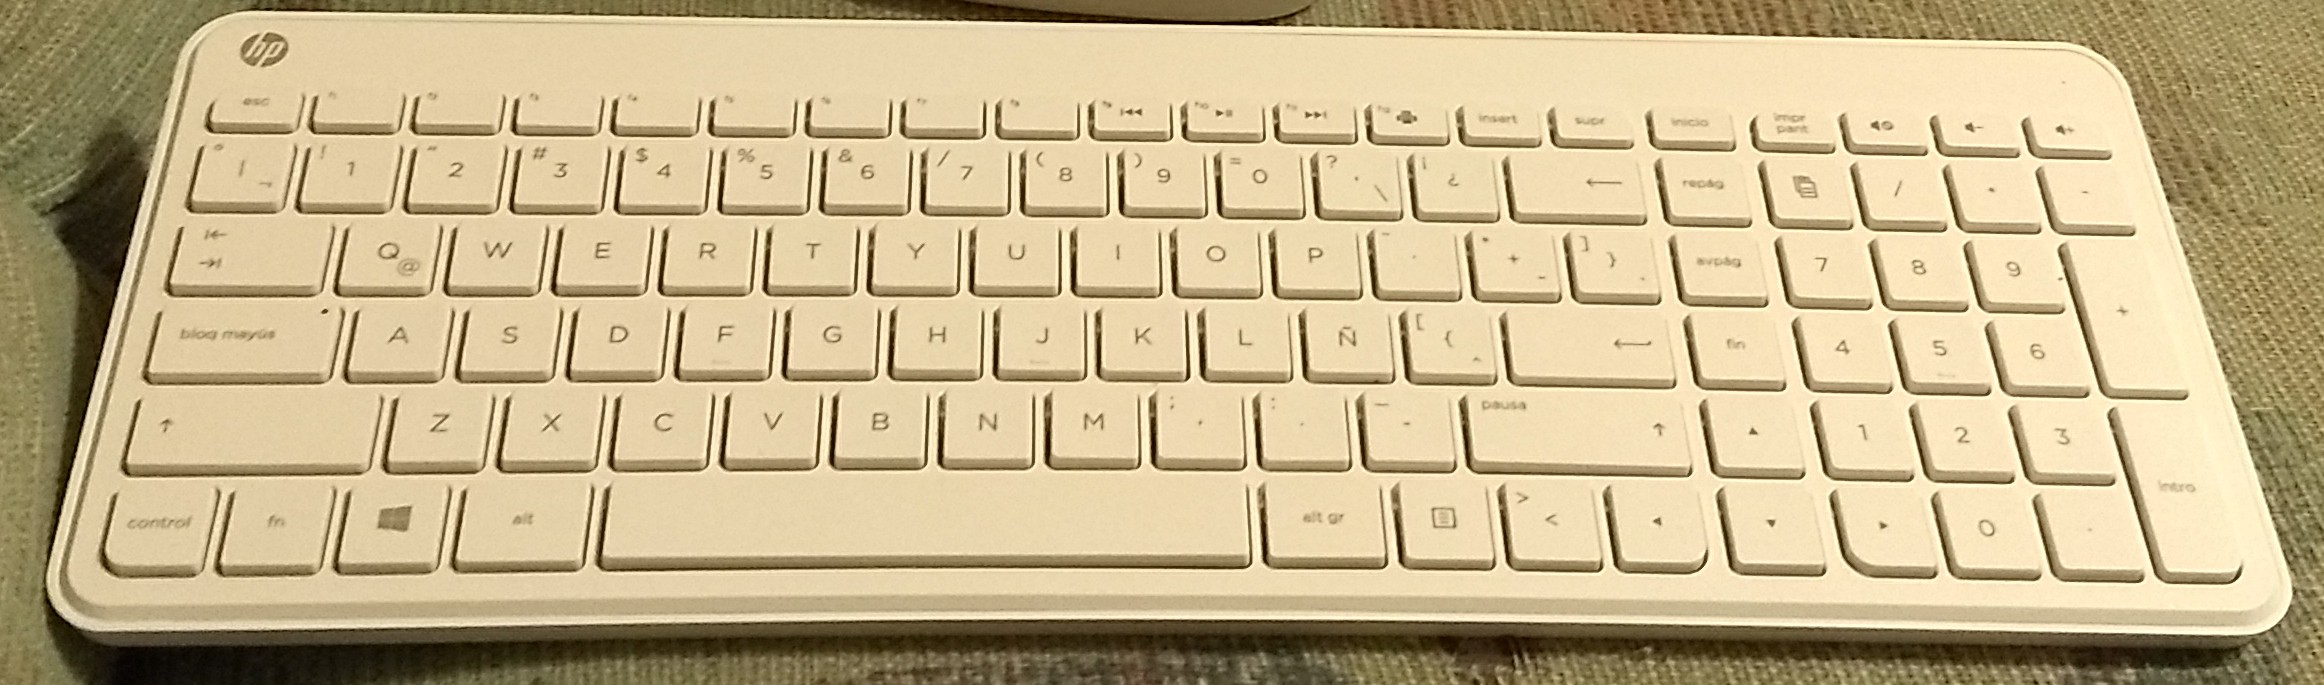 Solucionado: Cambiar teclado de fábrica de Pavilion de escritor... -  Comunidad de Soporte HP - 834323